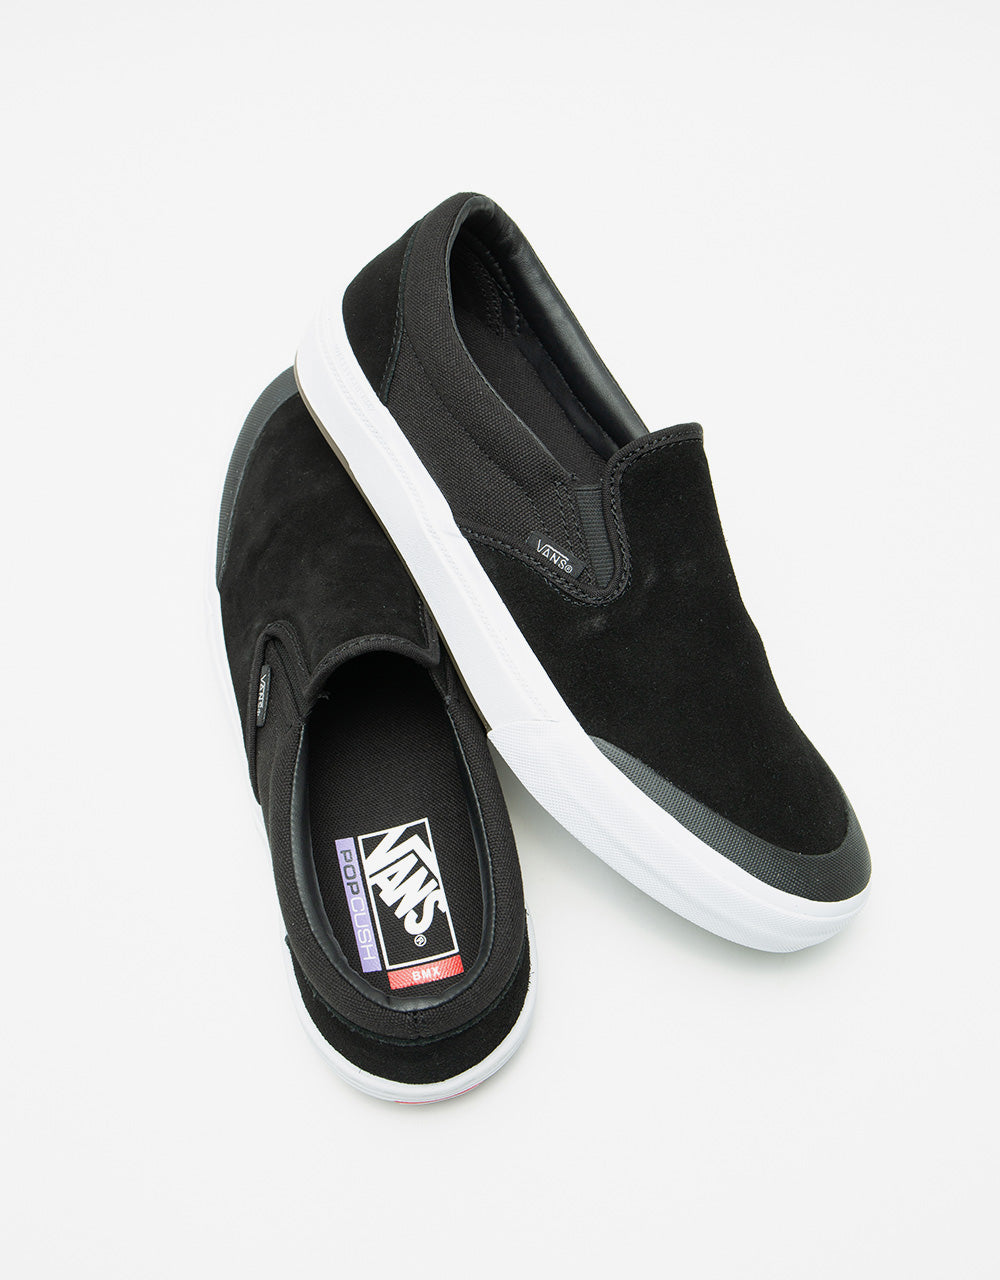 Vans BMX Slip-On Skate Shoes - Black/Grey/White